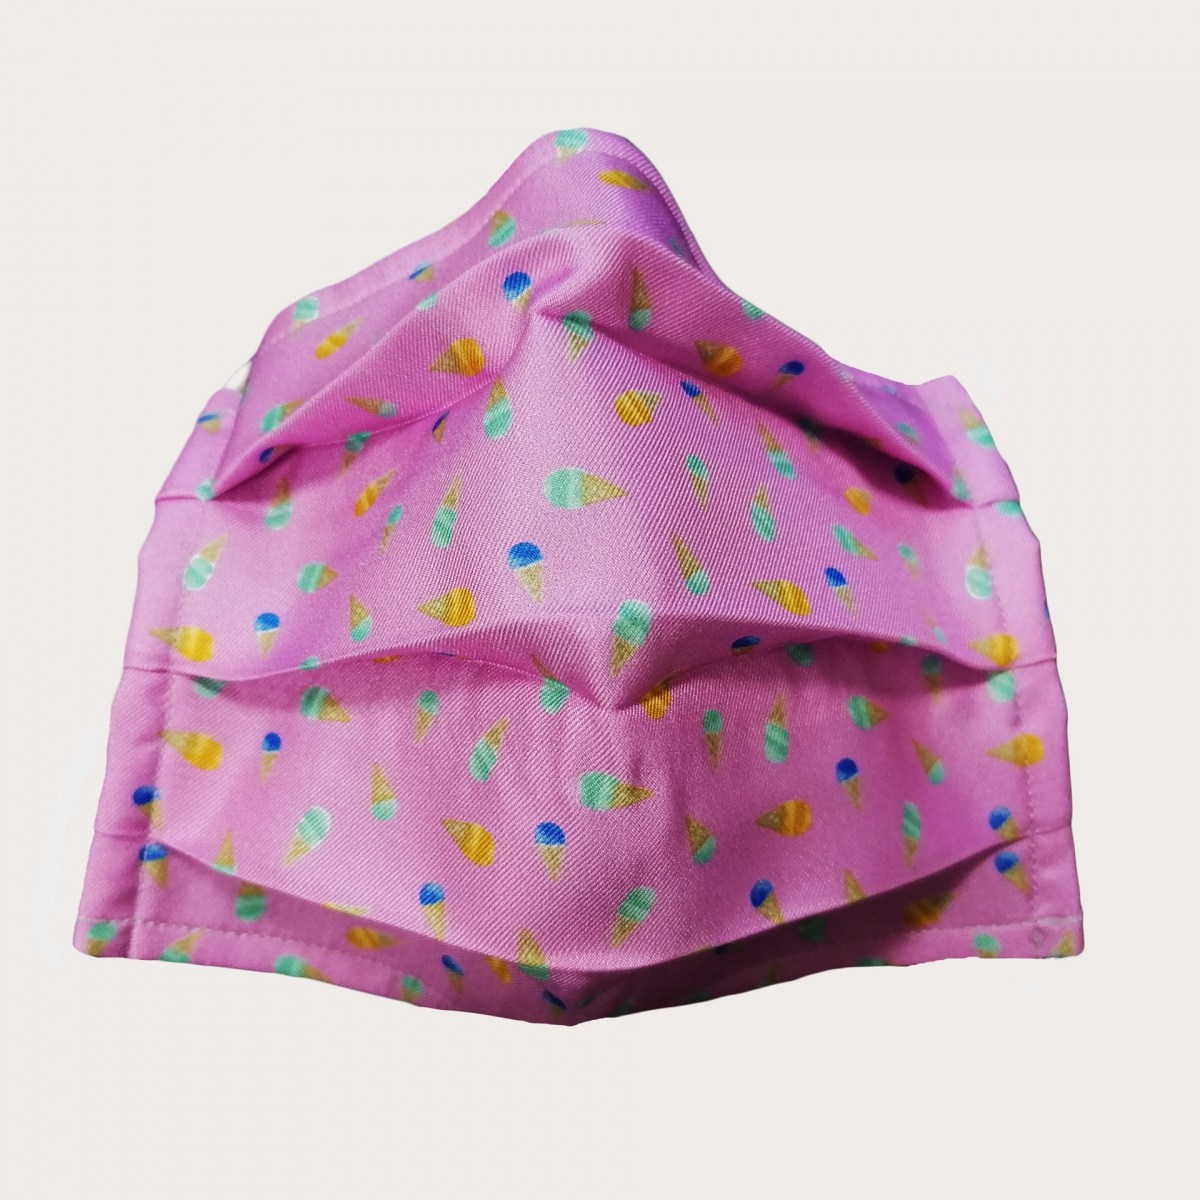 Wiederverwendbare schutzmasken  seiden rosa Eistüten